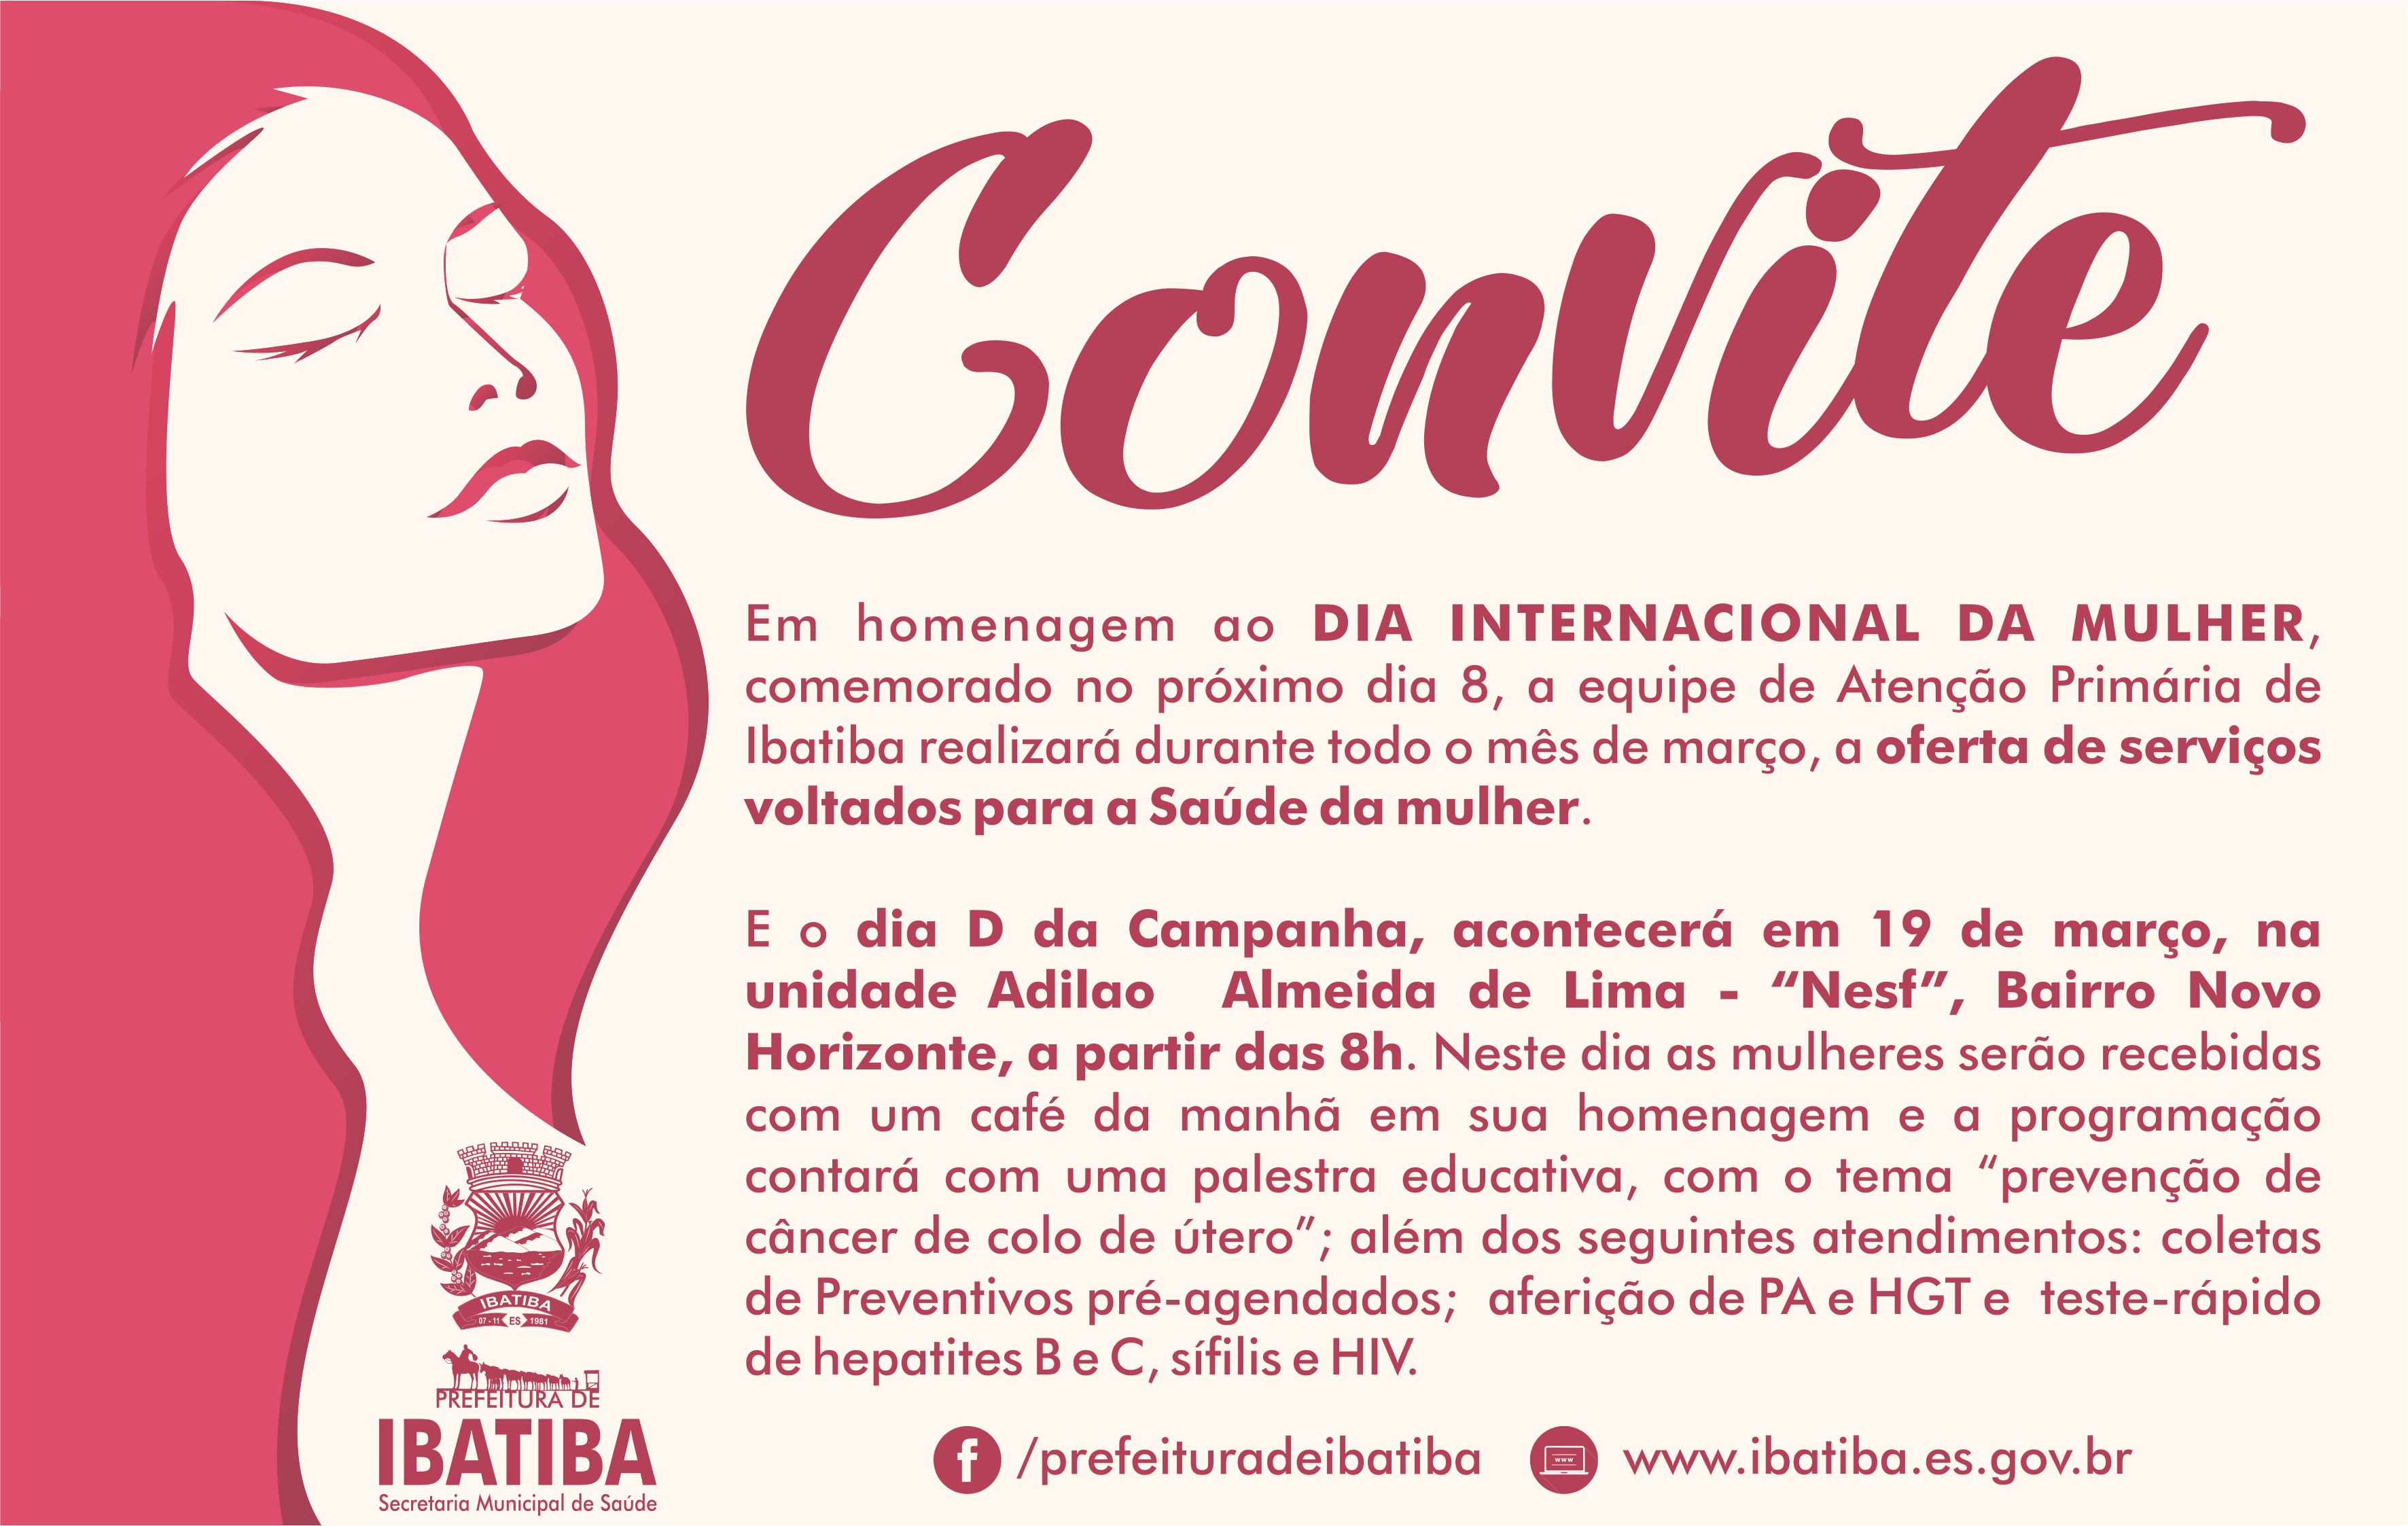 Secretaria de Saúde promove ações para comemorar o Dia Internacional da Mulher - 8 de março